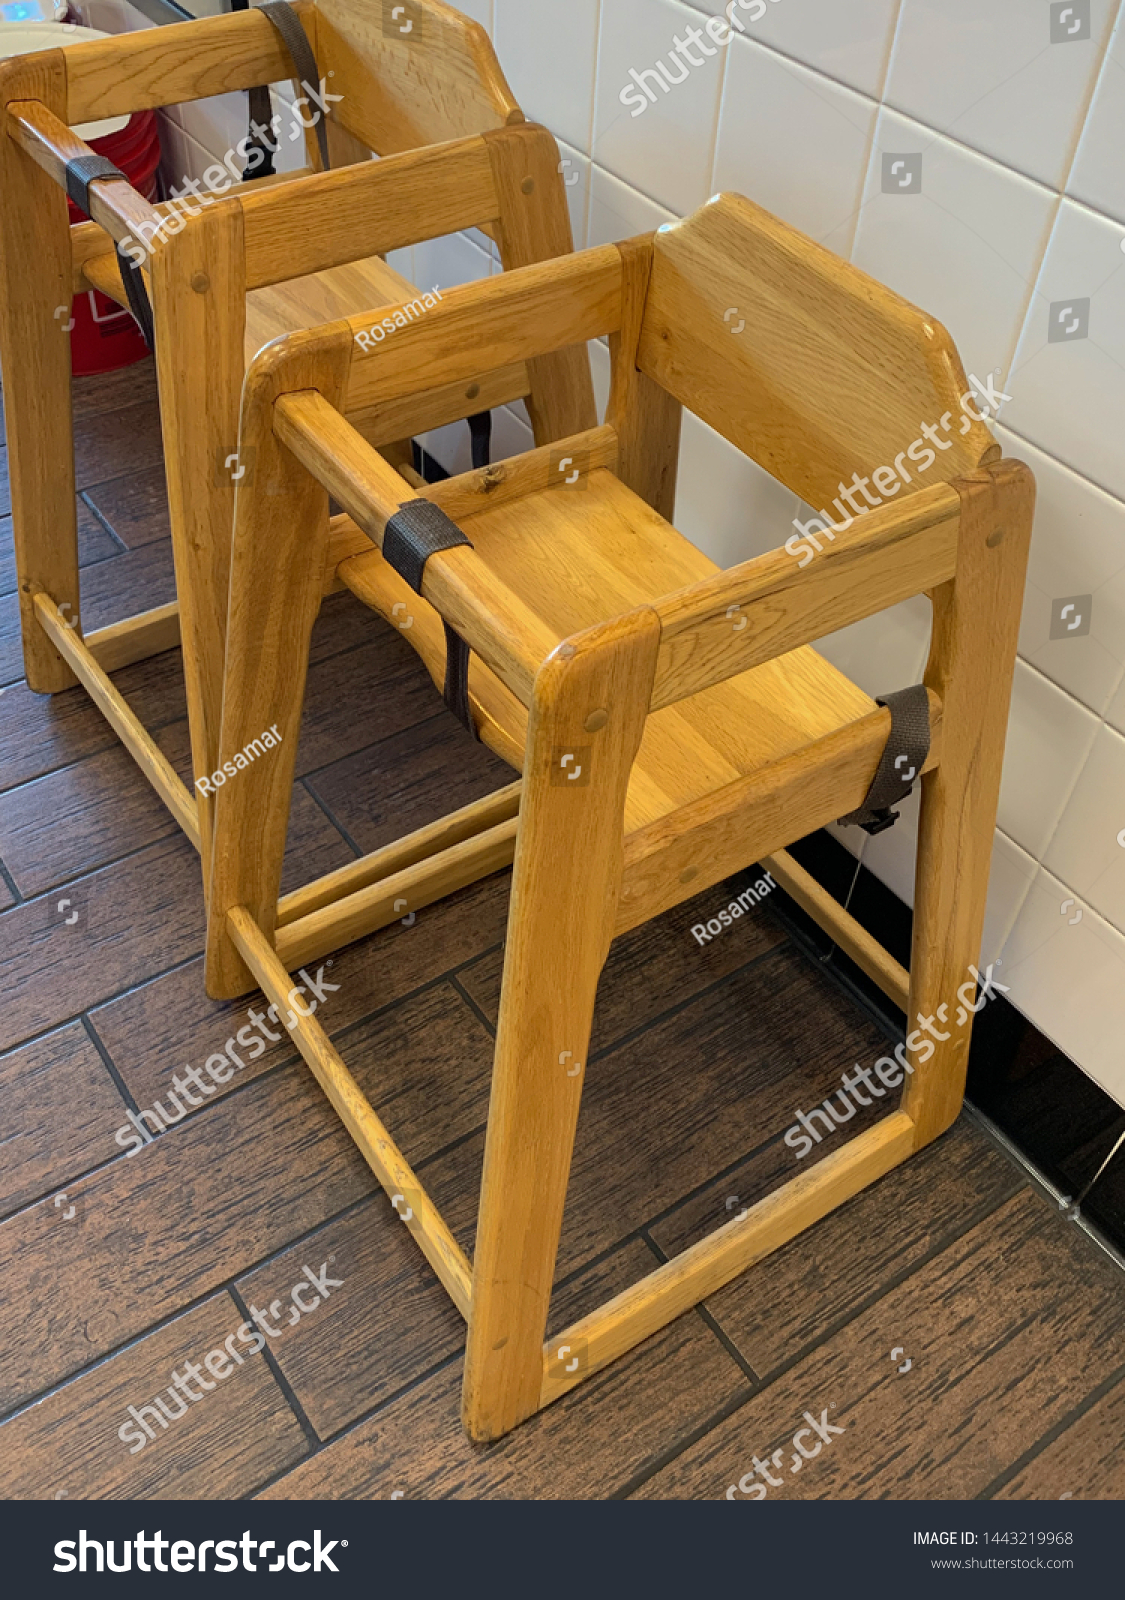 wooden restaurant high chair